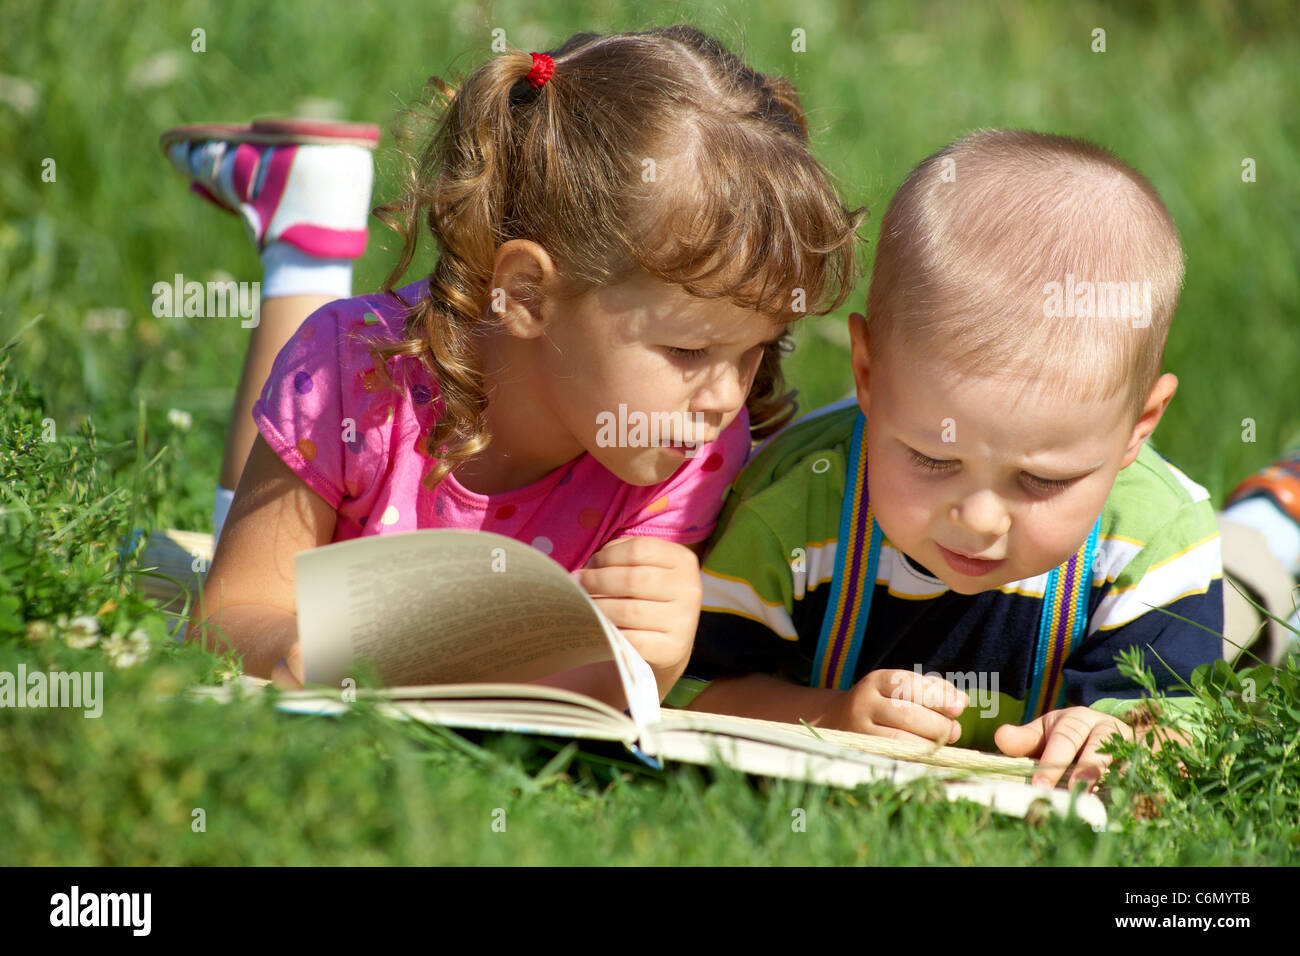 Kinder freuen sich über das Buch im grünen Rasen Stockfoto